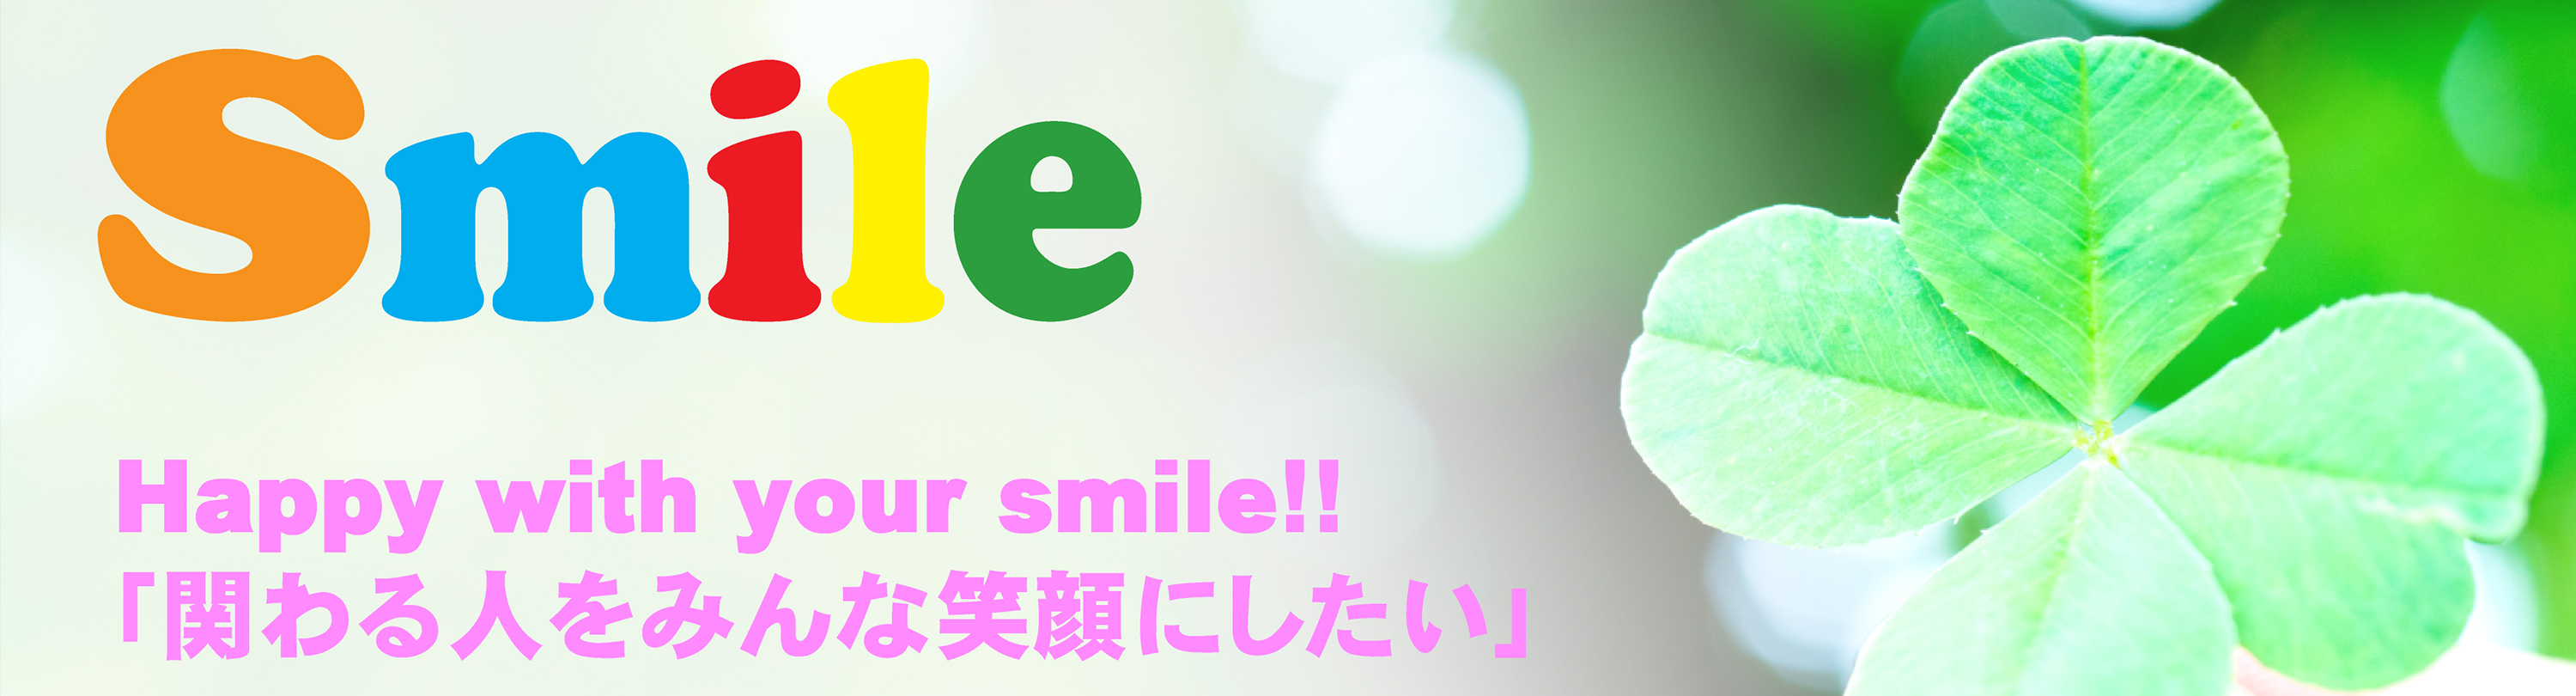 株式会社 素敵な人生 Smile Topページ